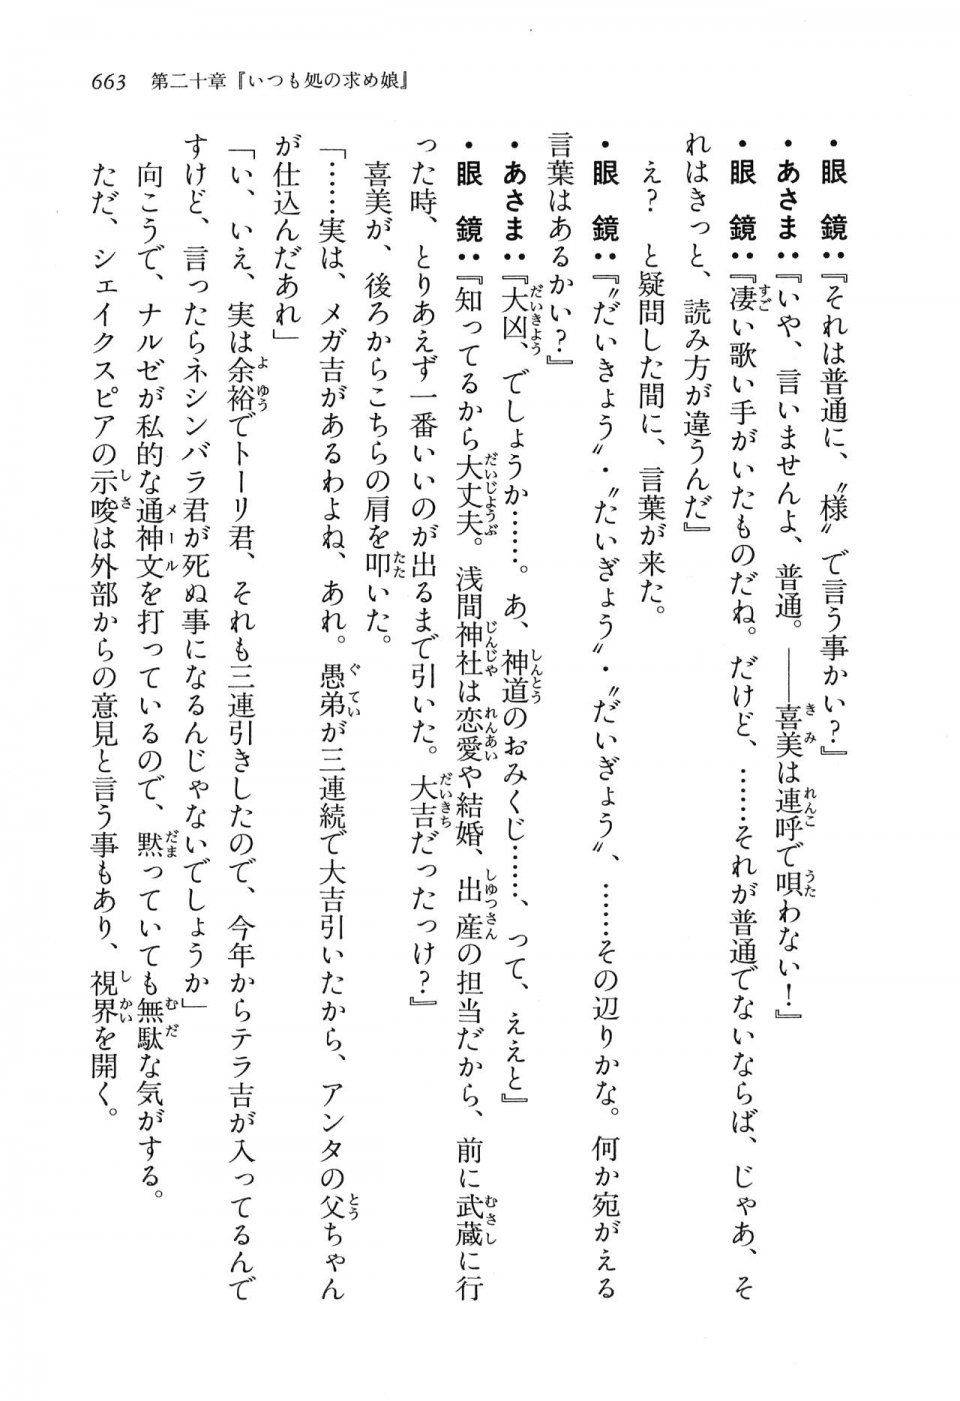 Kyoukai Senjou no Horizon LN Vol 16(7A) - Photo #663